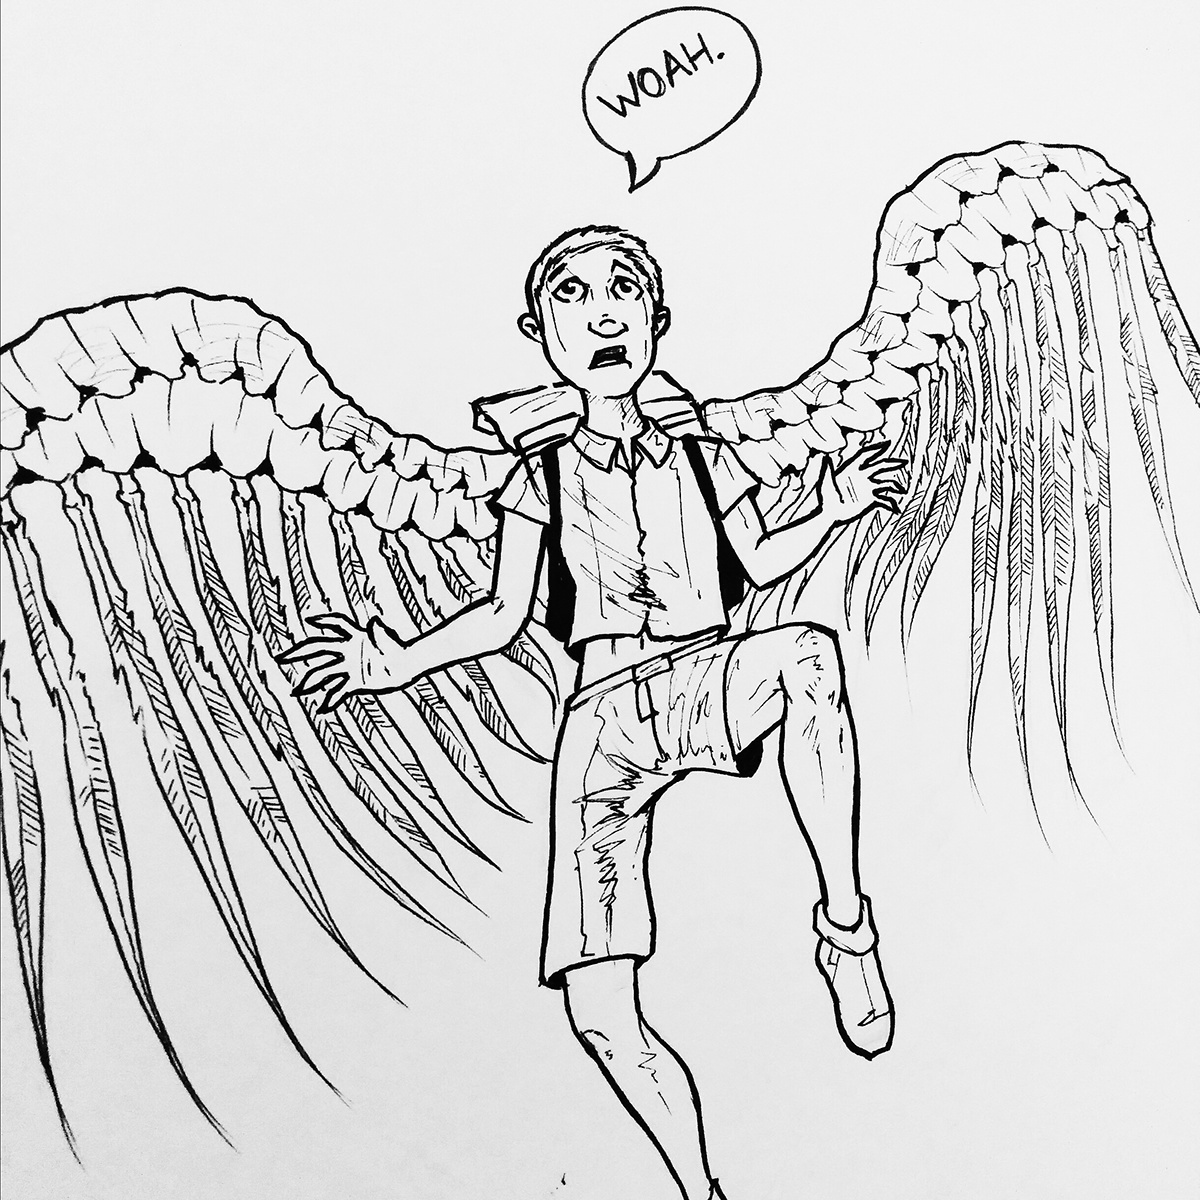 angel wings backpack Pack kid Flying comic book fantasy SKY